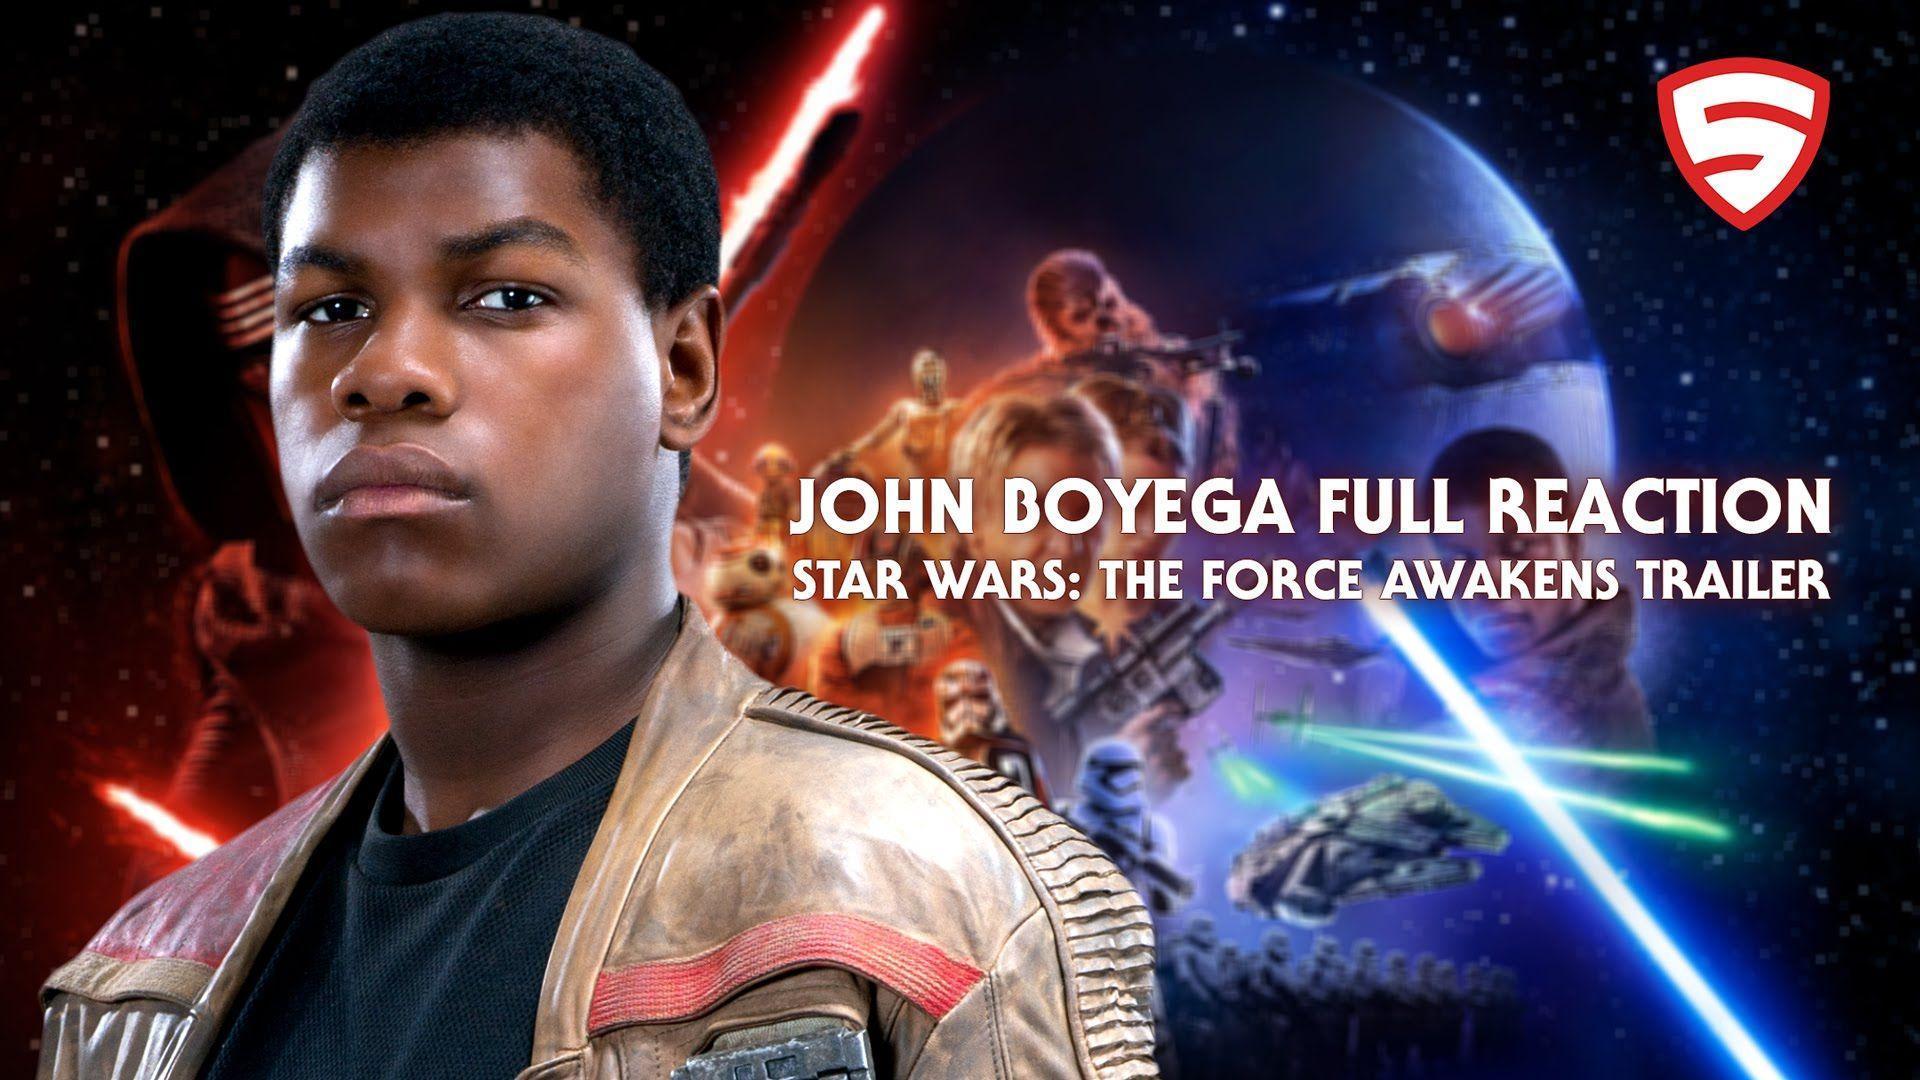 John Boyega's Full Reaction to the Star Wars: The Force Awakens